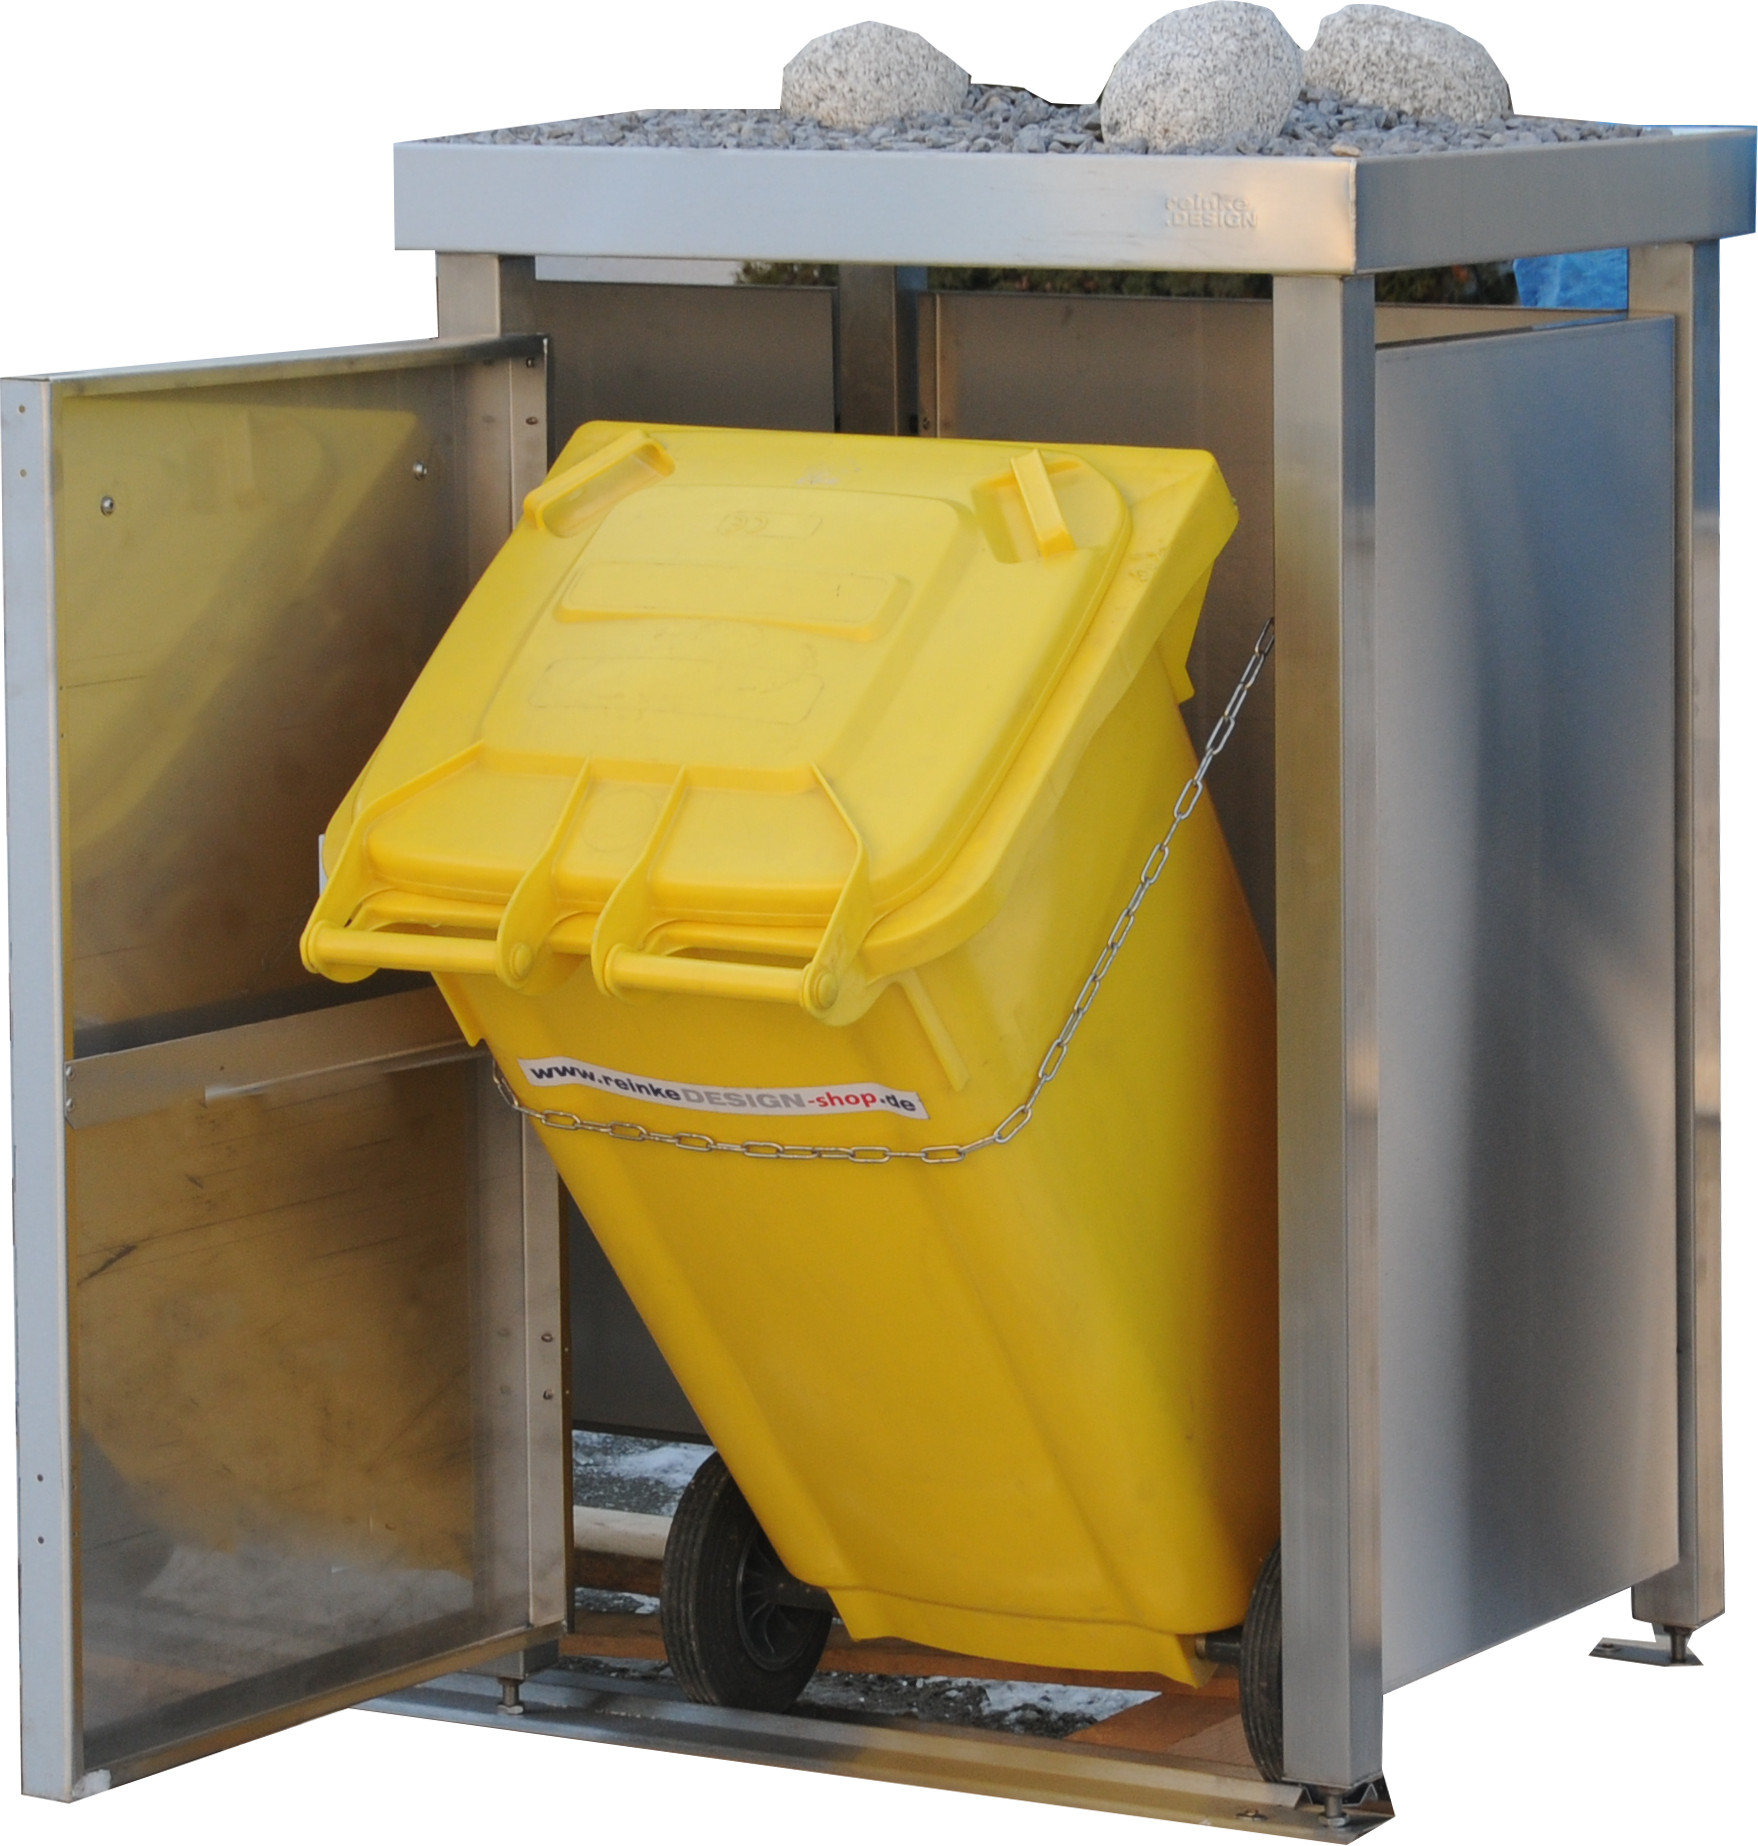 Müllbox Typ-LW, 2x 240l + 1x 120l, Türfarbe Anthrazit